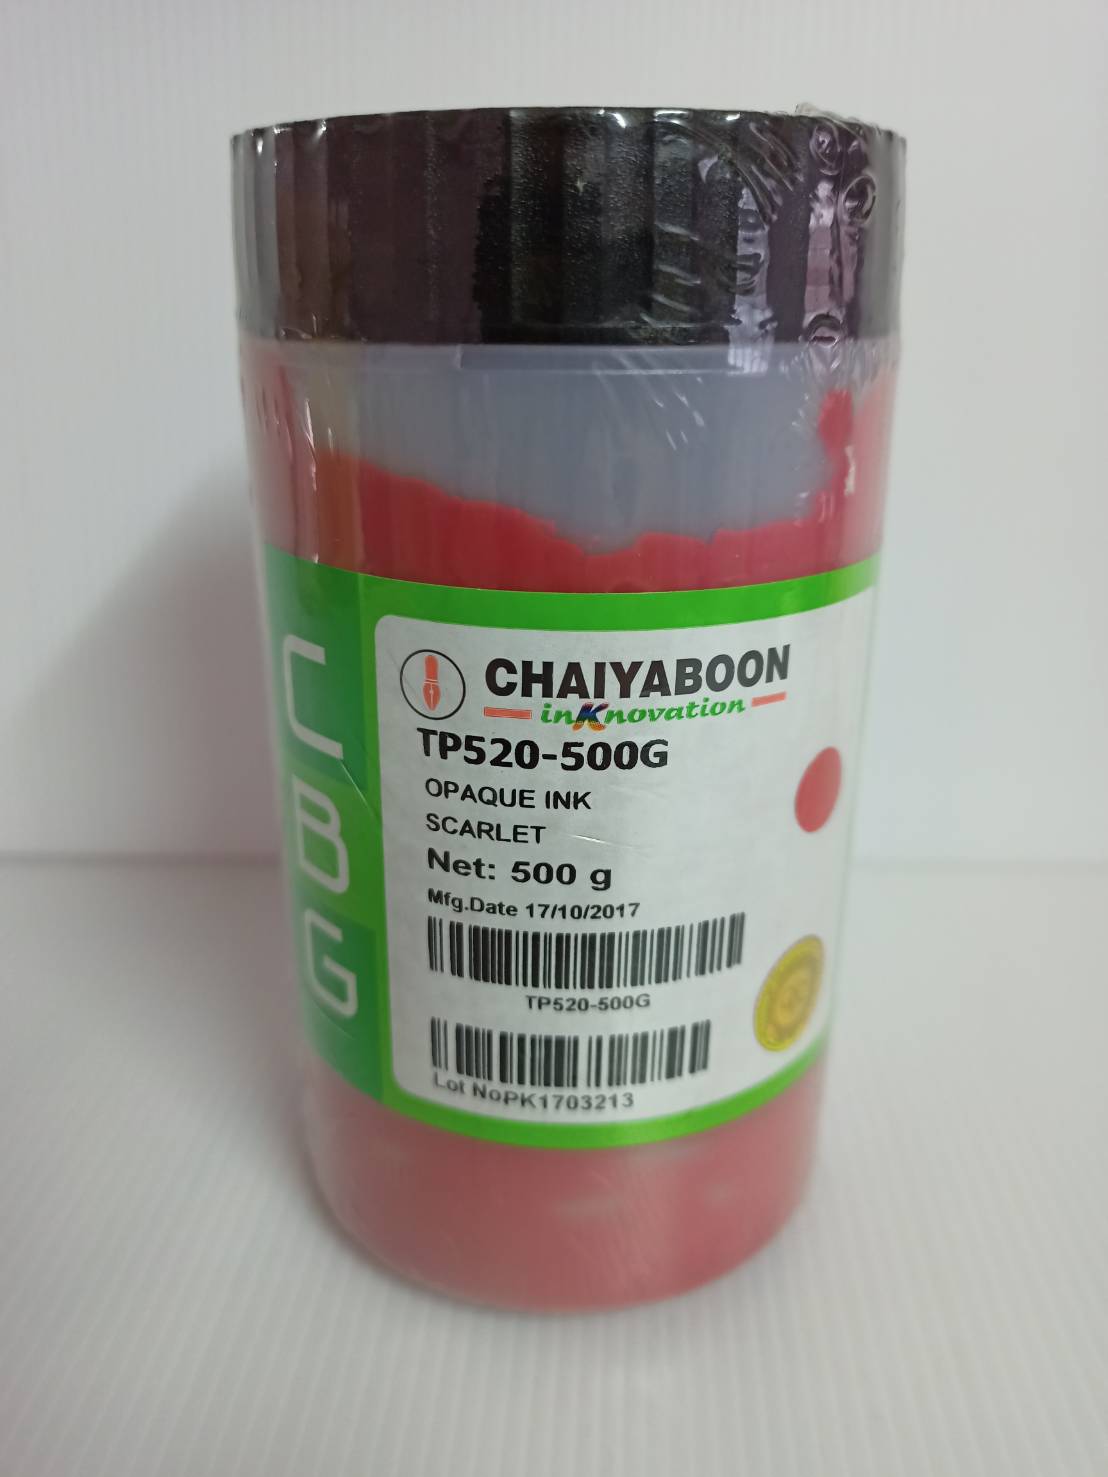 สีสกรีน TP520-500G - OPAQUE INK BRIGHT SCARLET สีแดง